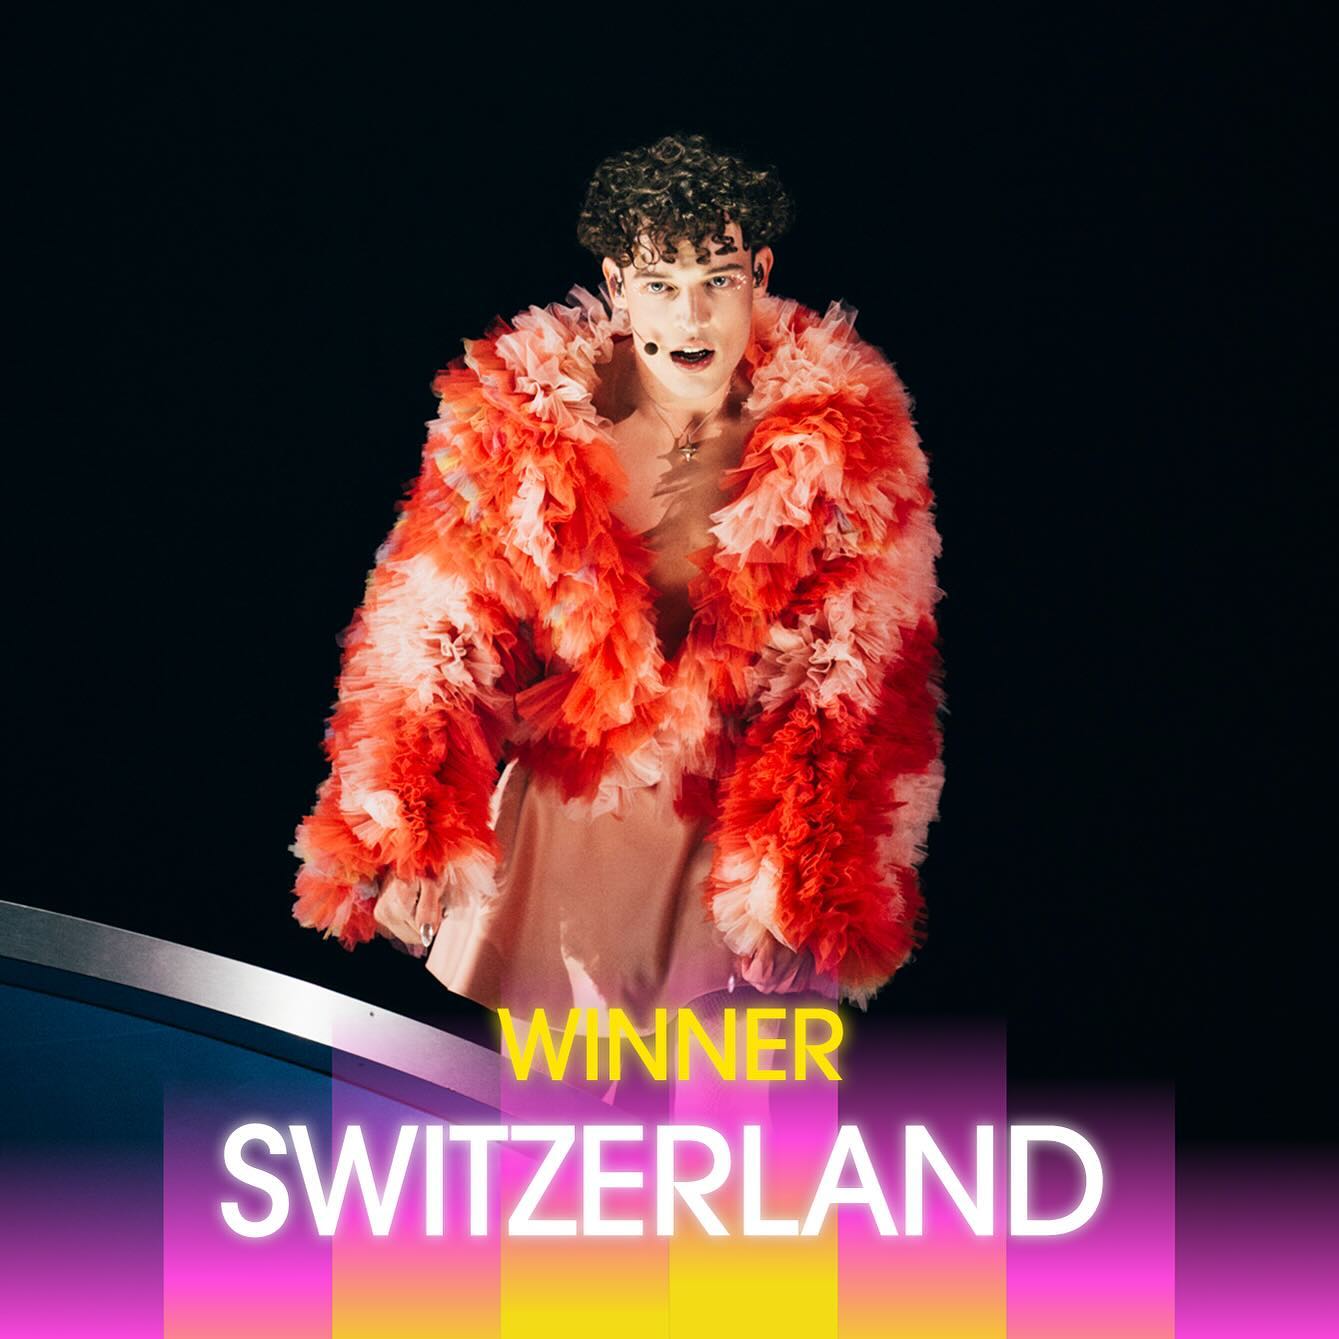 Foto von Nemo beim Song Contest. Bildbeschriftung "Winner Switzerland"